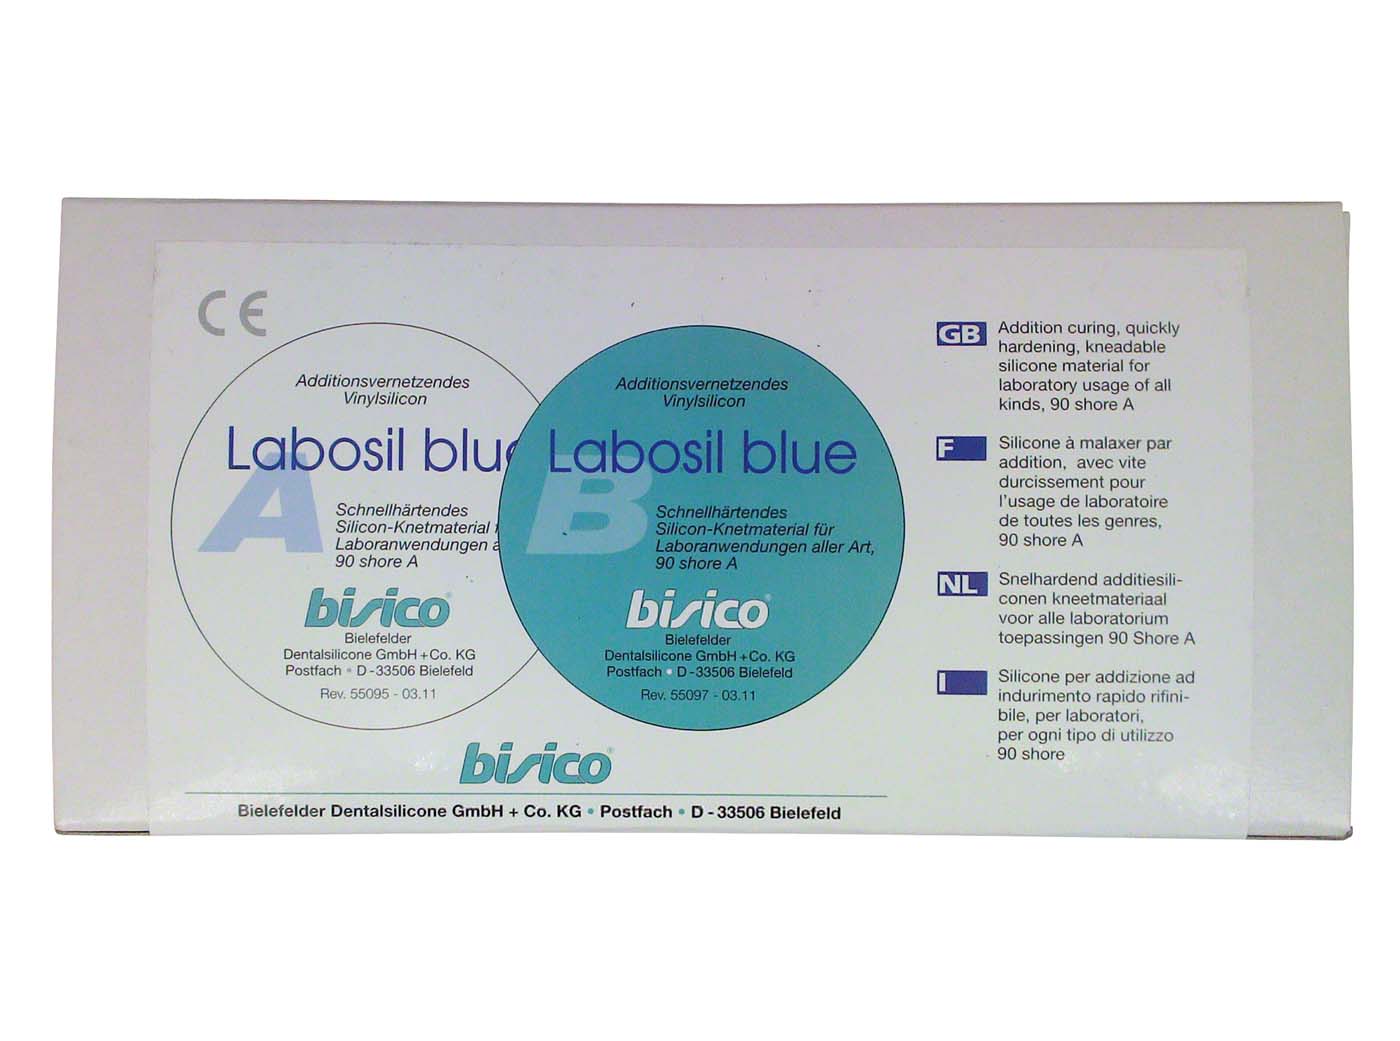 Labosil blue bisico